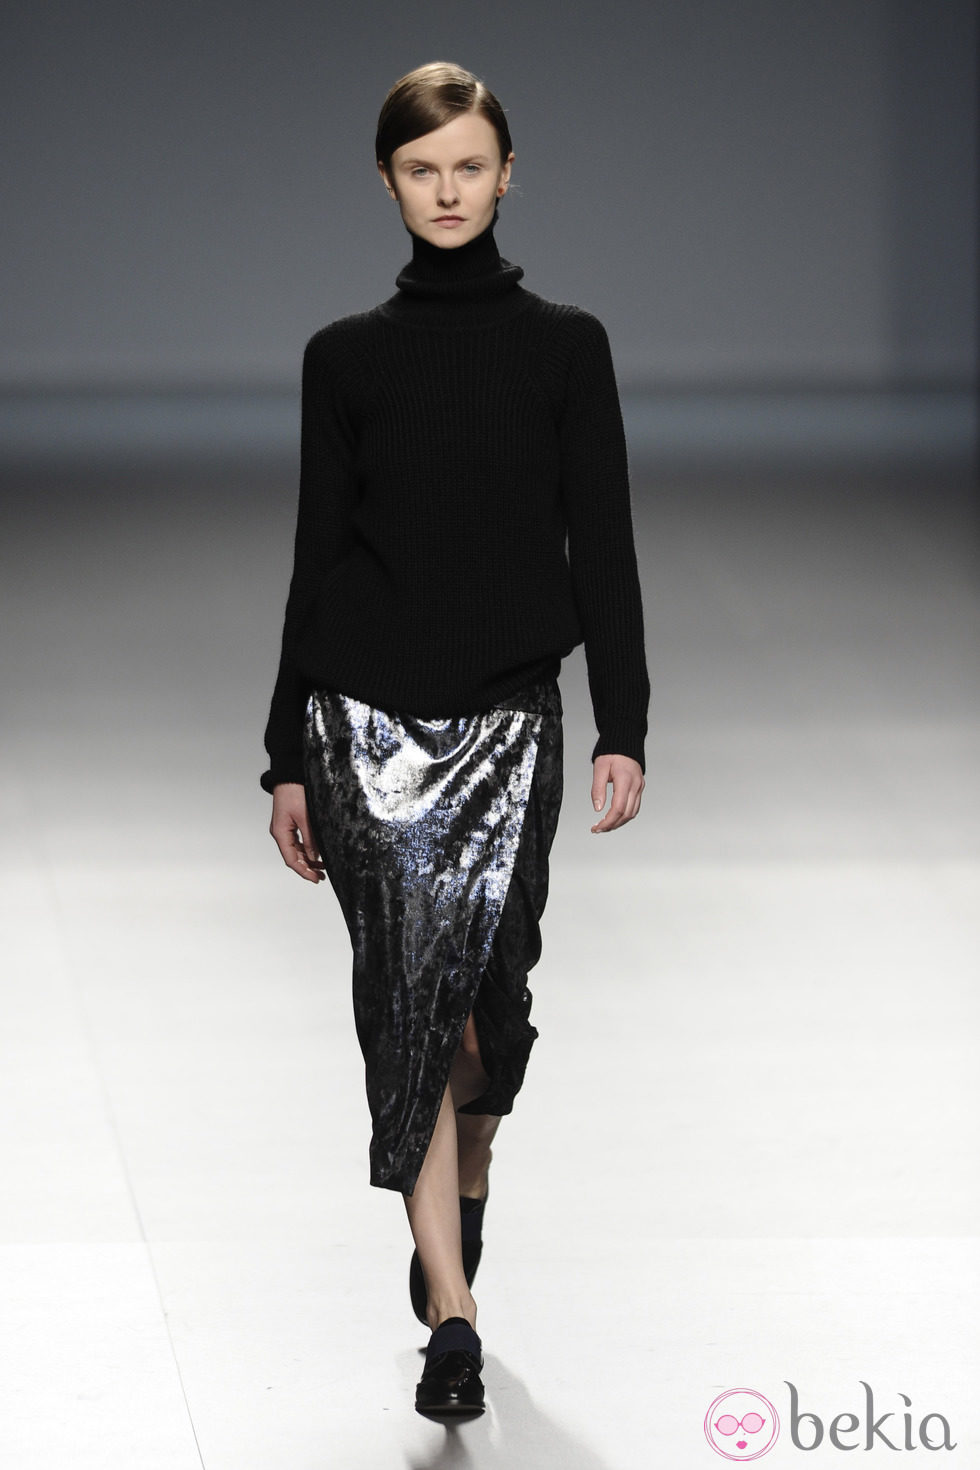 Falda metalizada de la colección otoño/invierno 2014/2015 de Ángel Schlesser en Madrid Fashion Week